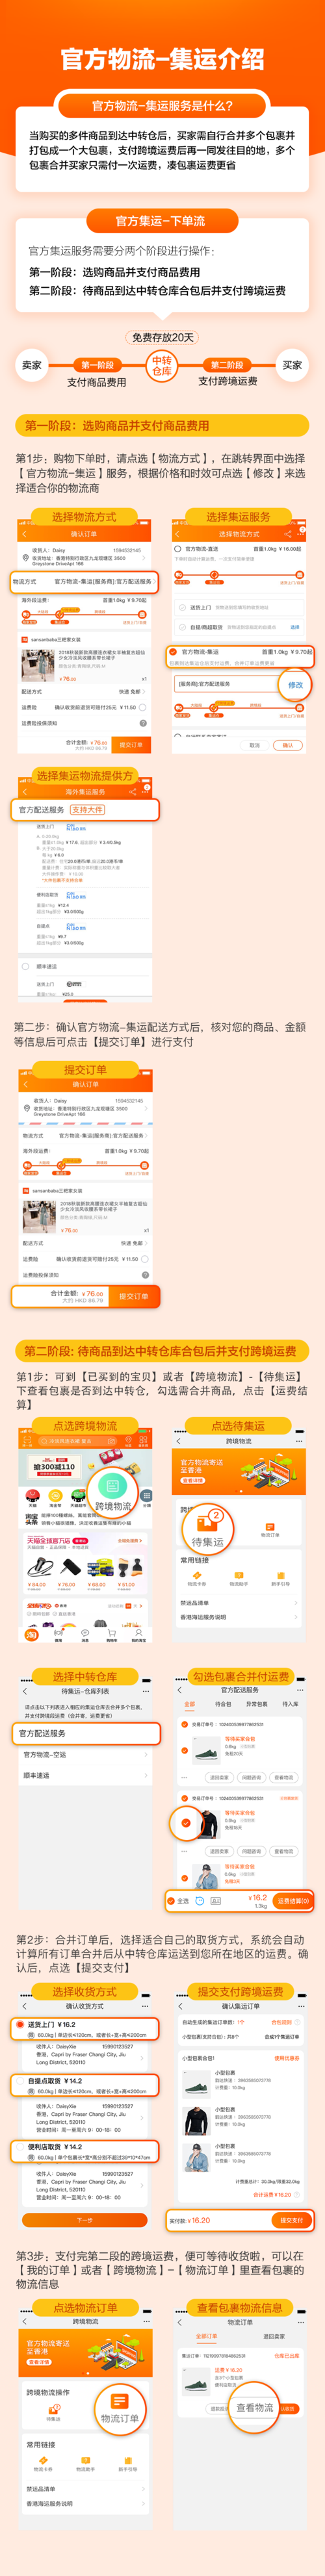 问淘宝官方集运下单流程手机淘宝app656